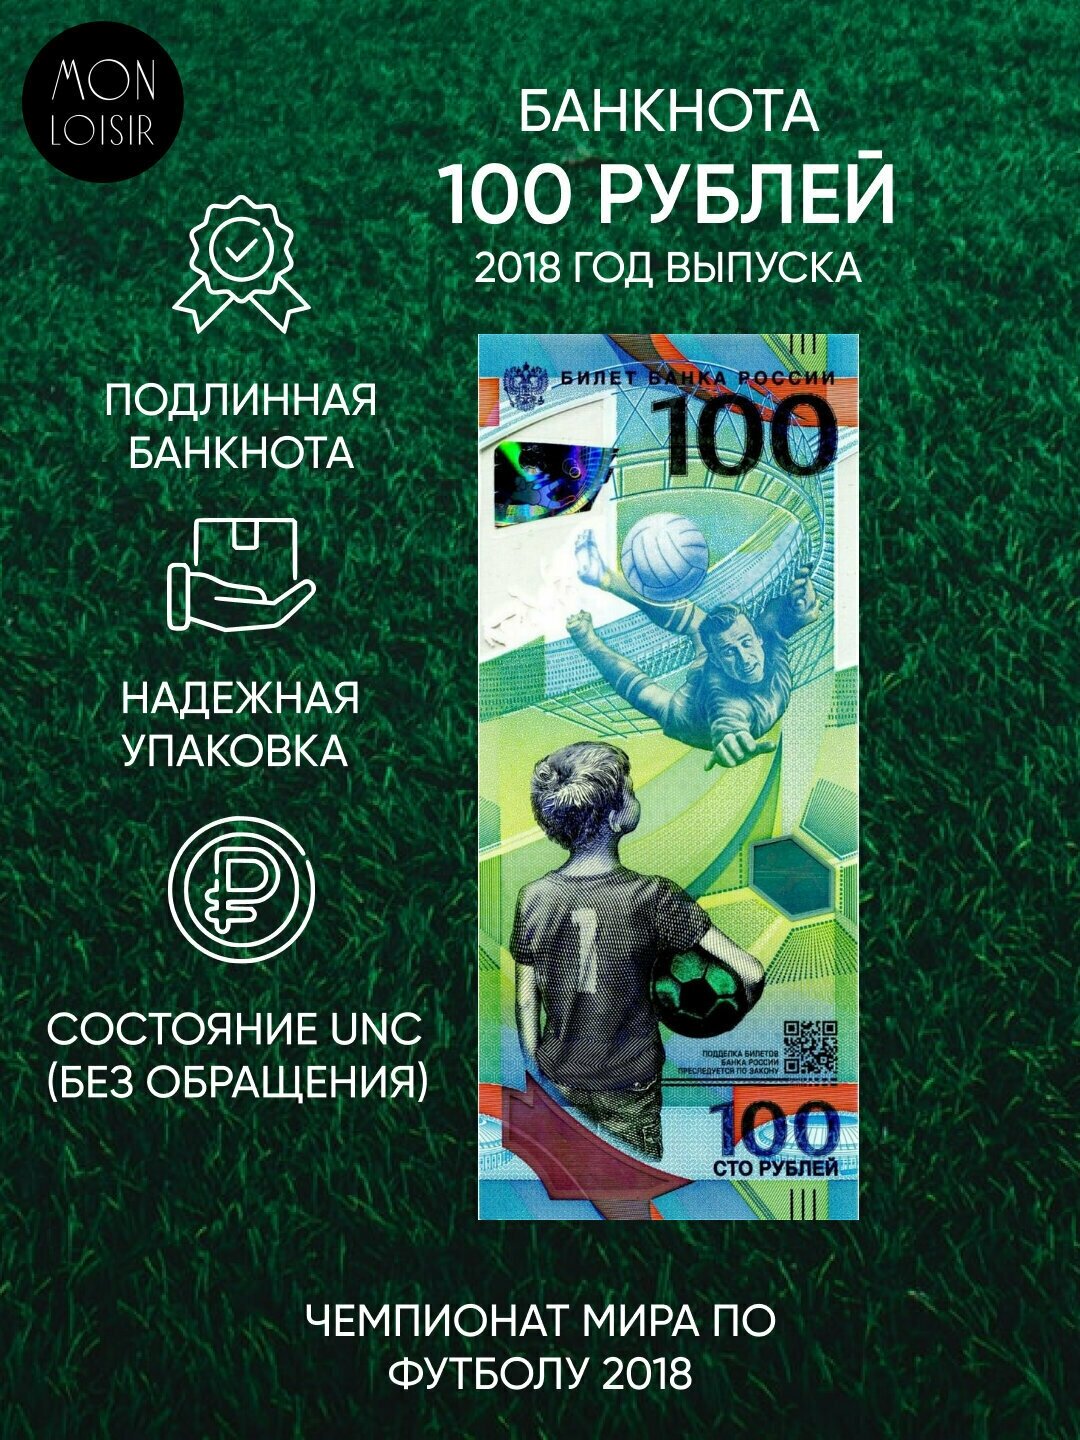 Банкнота 100 рублей Футбол, Чемпионат мира по футболу 2018 г. в. Состояние aUNC (без обращения)